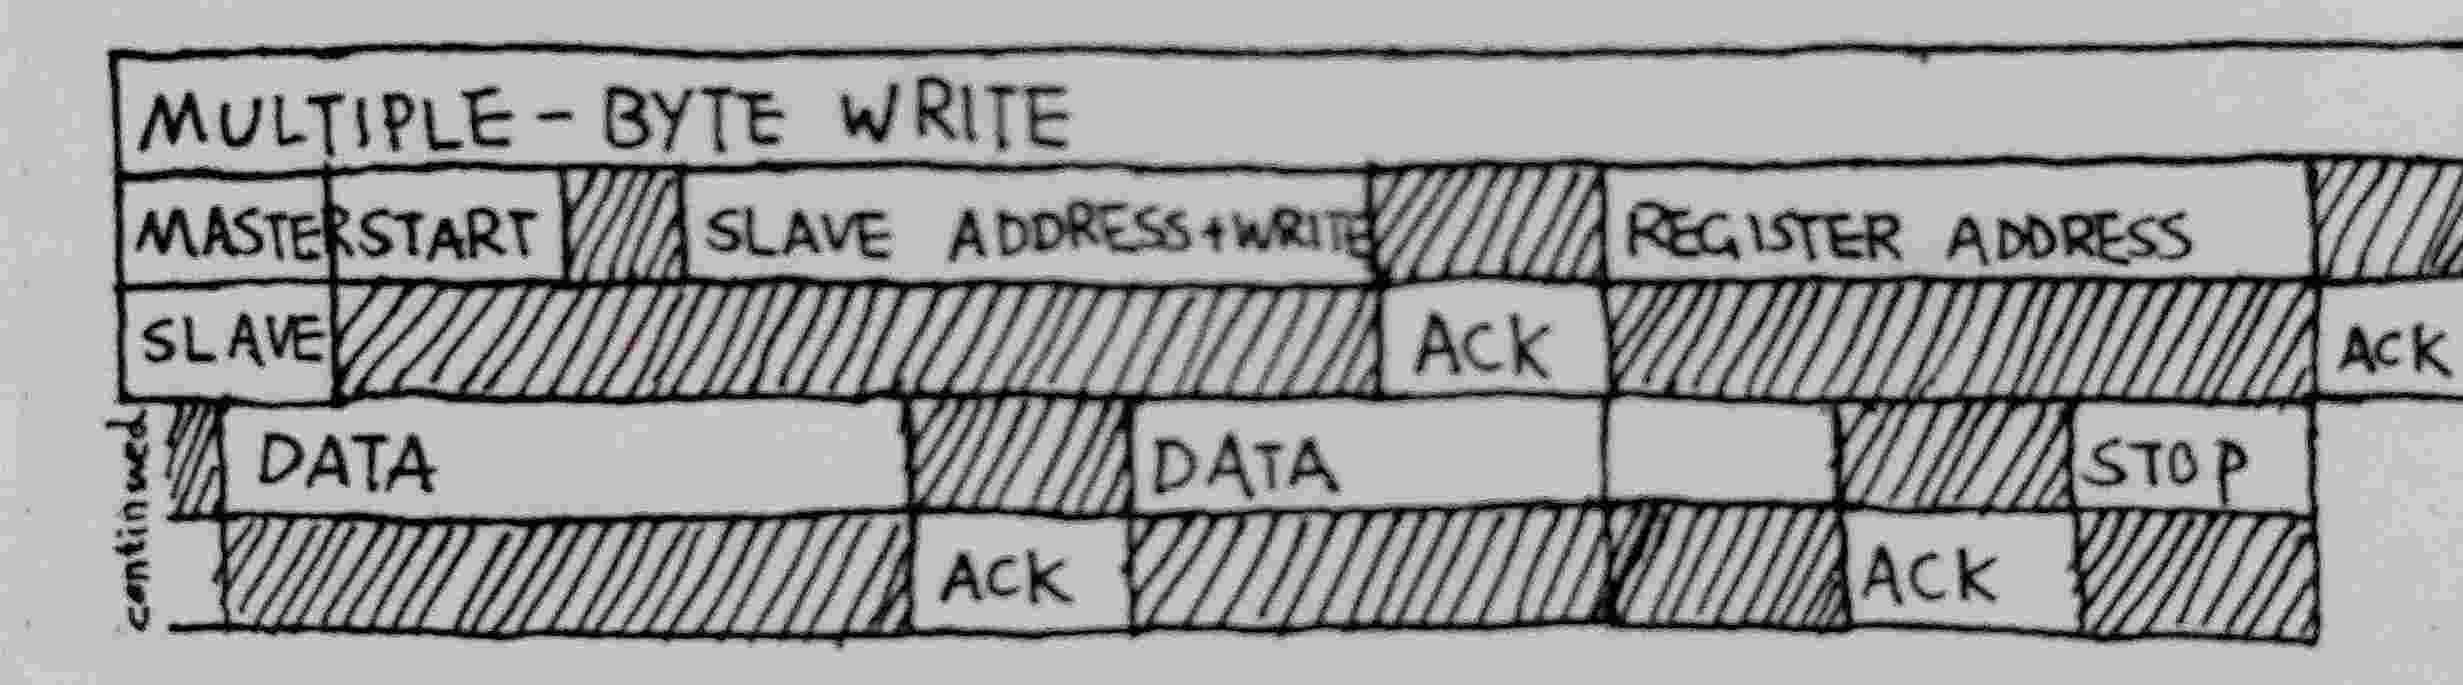 multiple-byte write